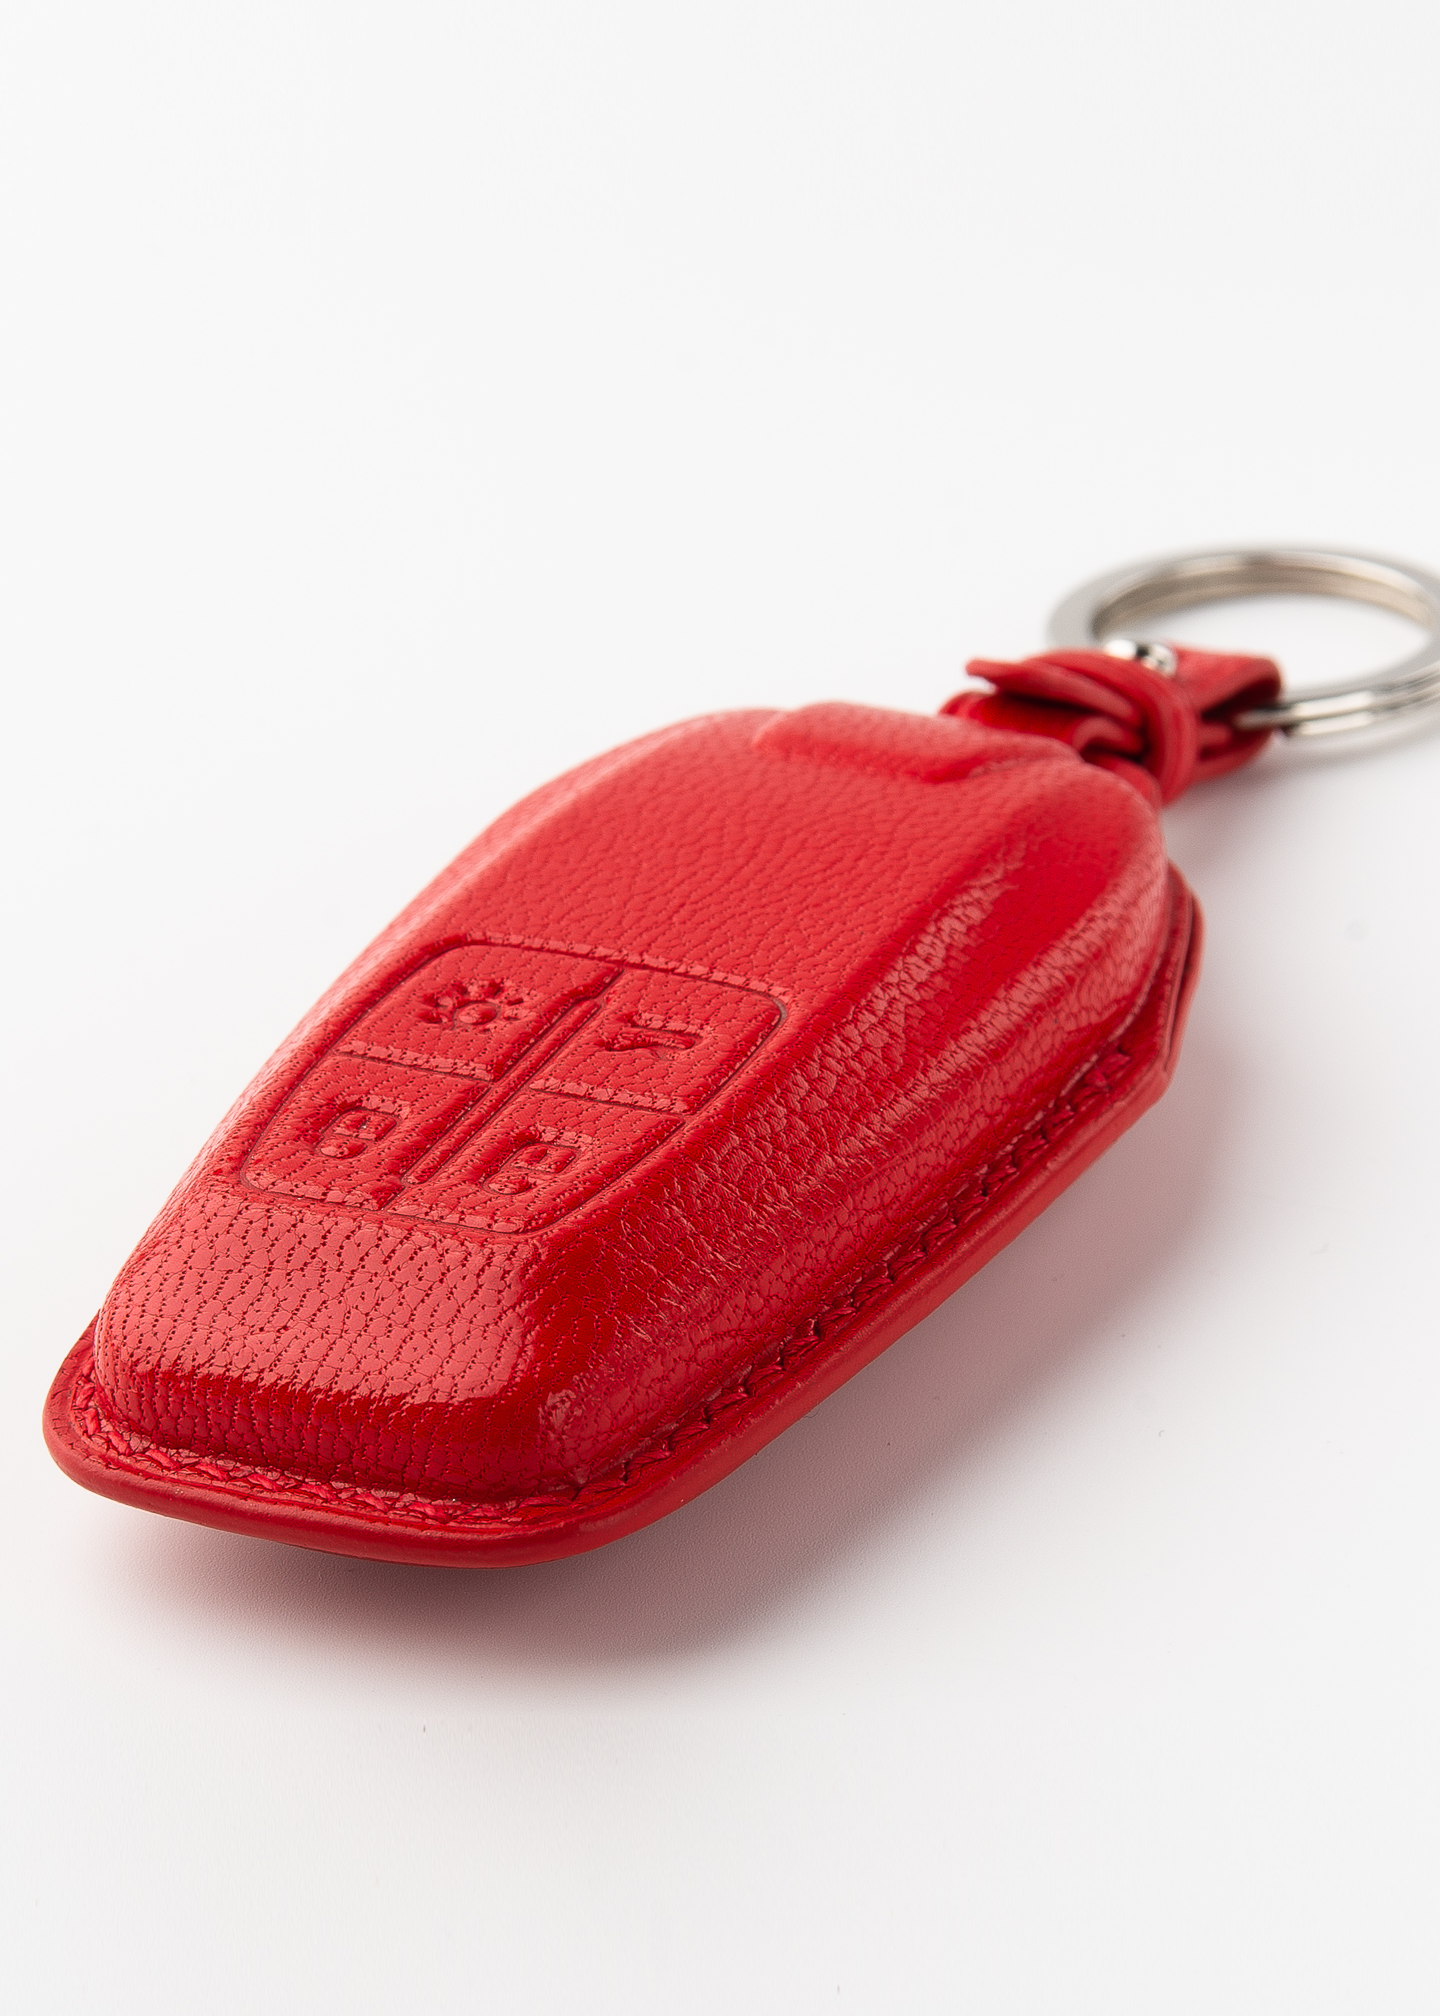 Timotheus für Ferrari-Schlüsselanhänger, kompatibel mit Ferrari-Schlüssel